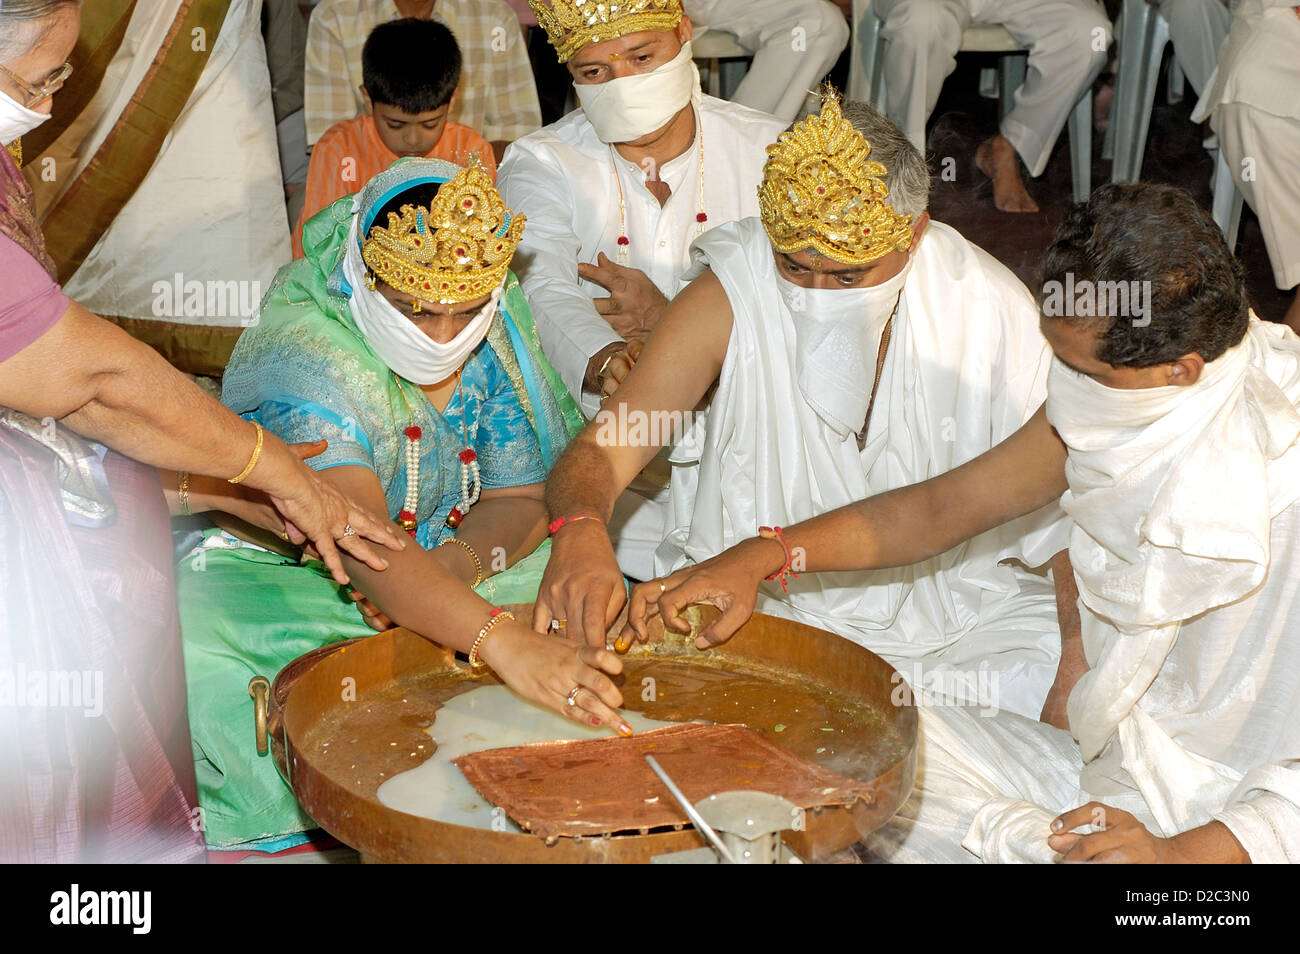 Prière spéciale offerte par la communauté religieuse Jain de l'Inde Banque D'Images